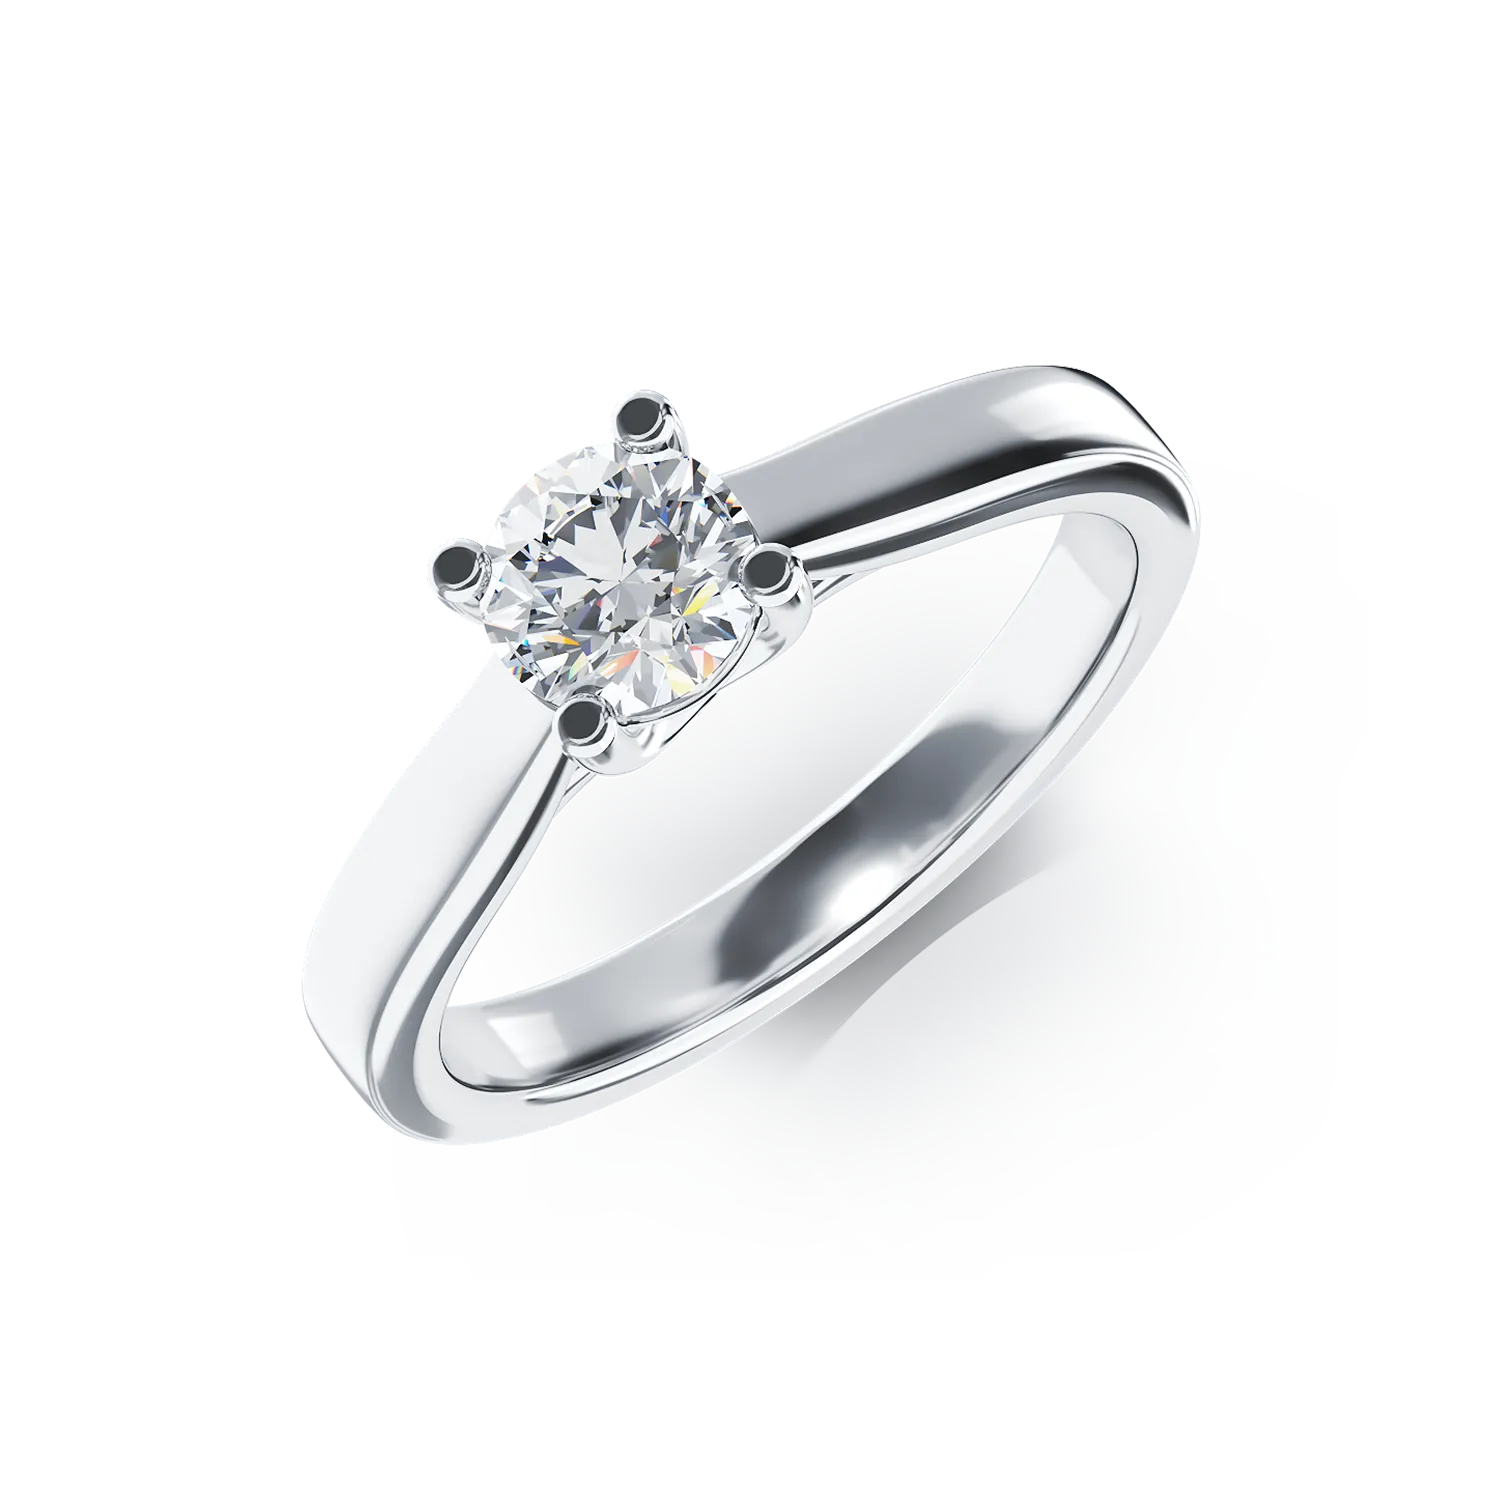 Inel de logodna din aur alb de 18K cu un diamant solitaire de 0.5ct